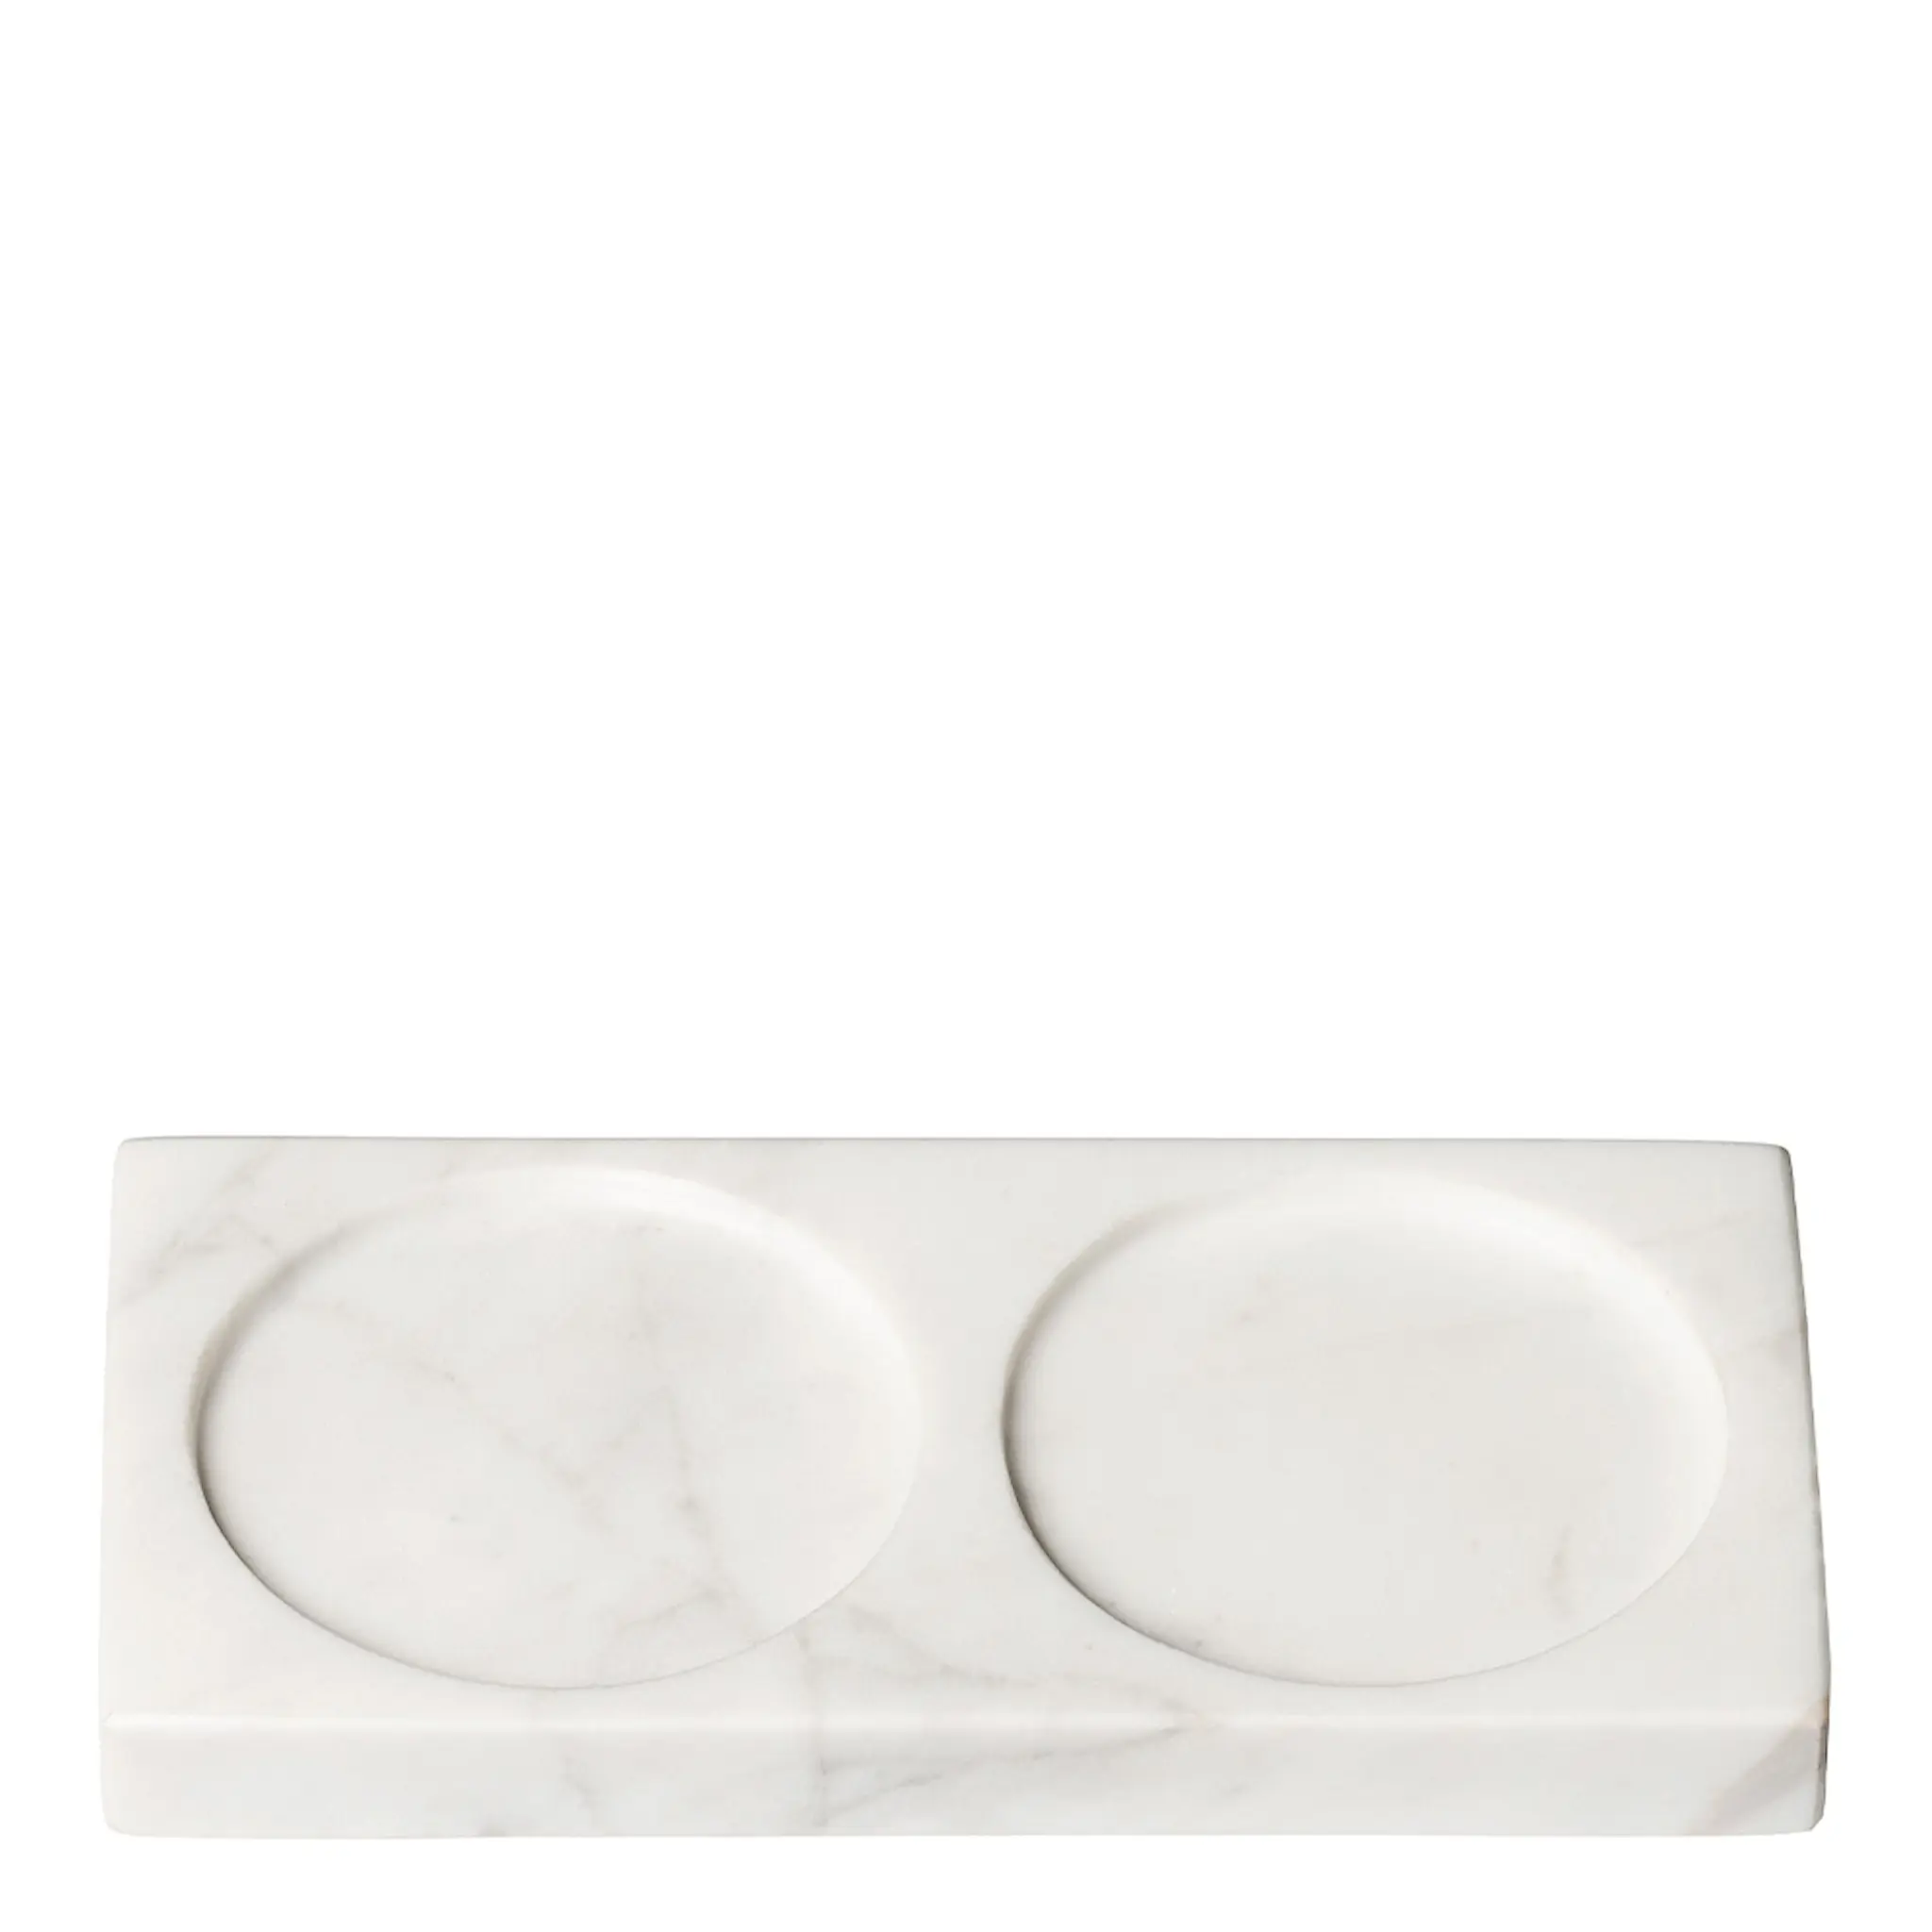 CrushGrind Tabletopper Alusta 15 cm White Marble 2